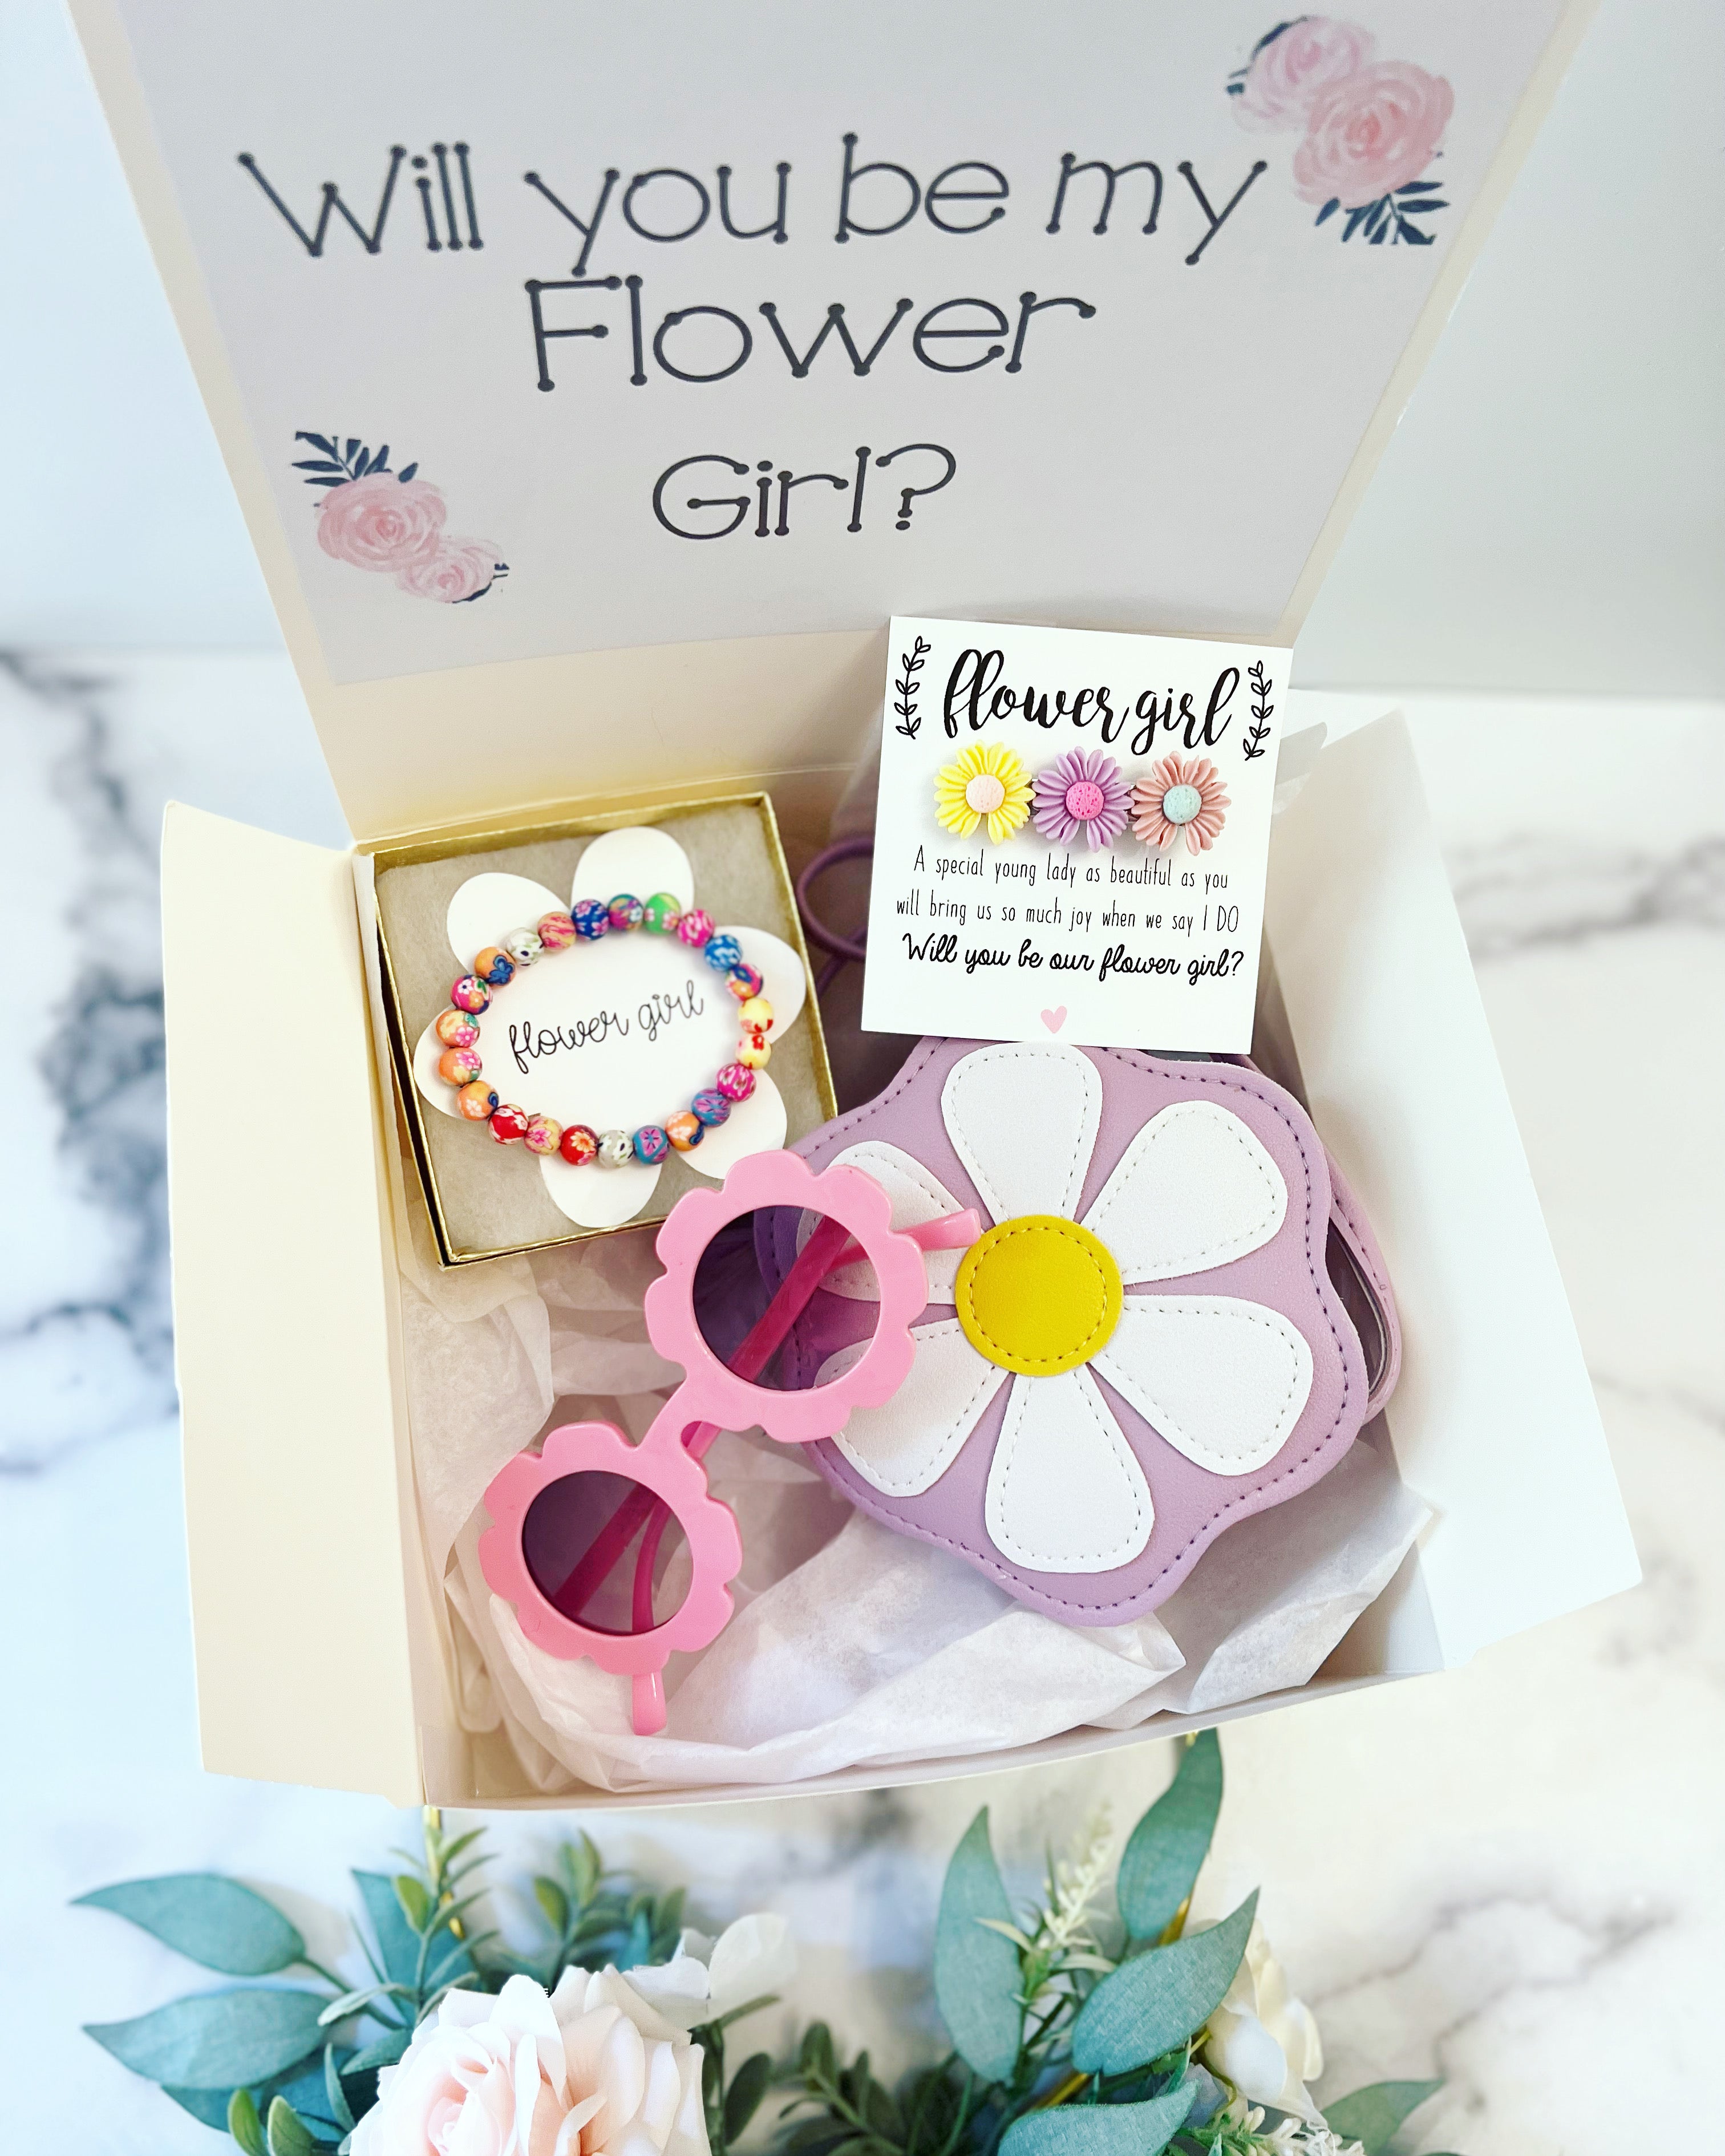 Flower Girl Gifts - The Gift Bulb